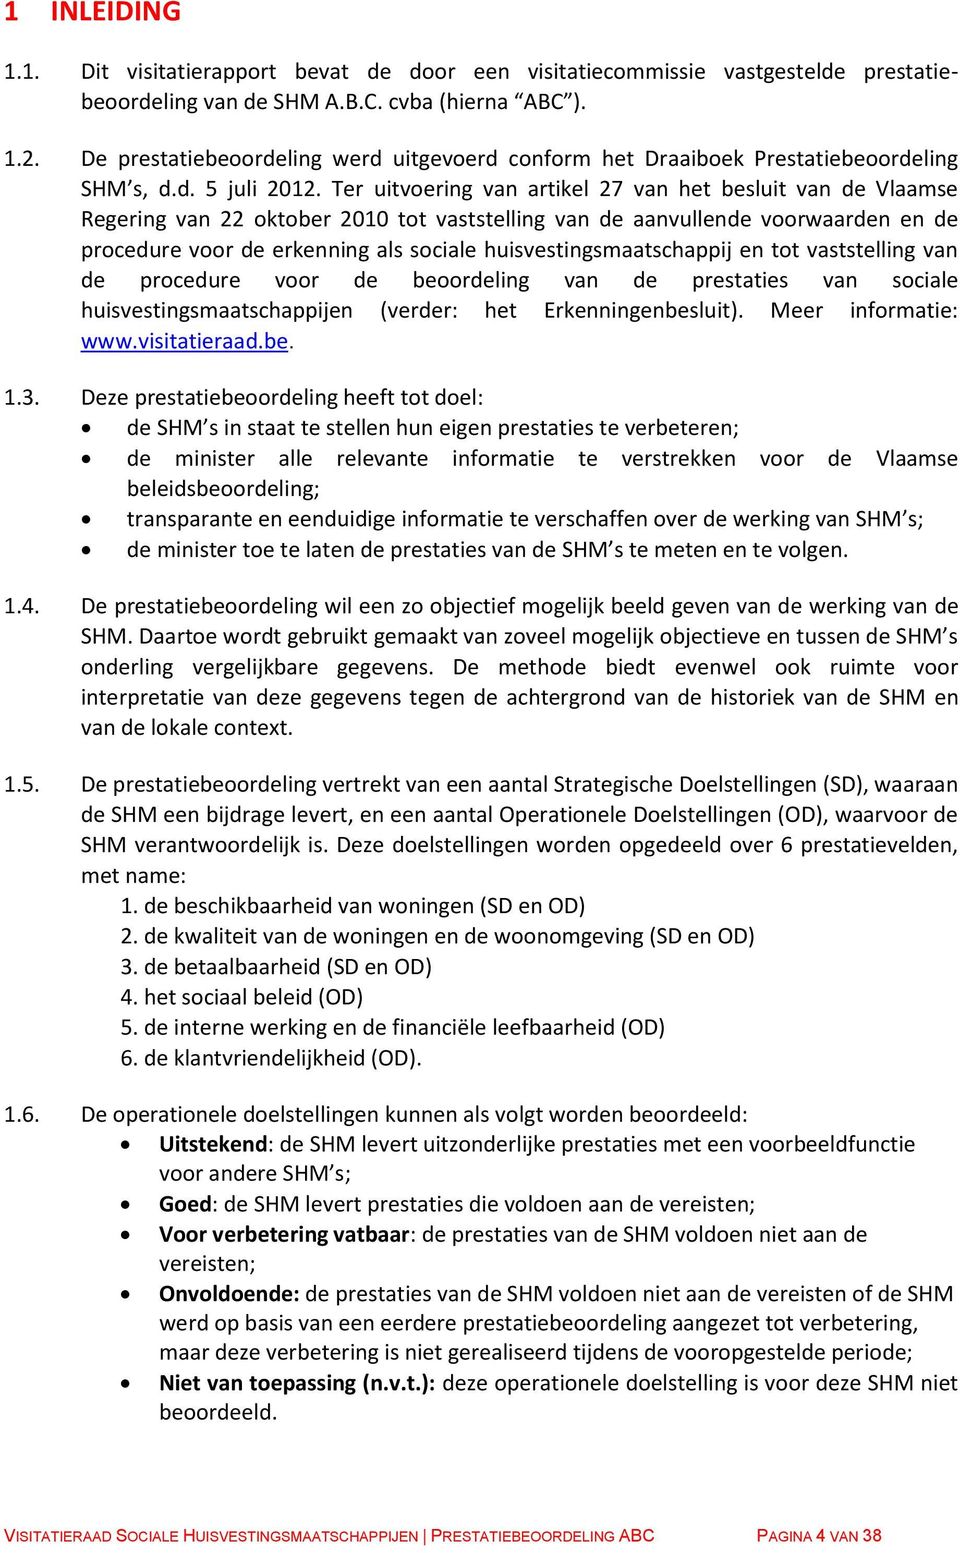 Ter uitvoering van artikel 27 van het besluit van de Vlaamse Regering van 22 oktober 2010 tot vaststelling van de aanvullende voorwaarden en de procedure voor de erkenning als sociale